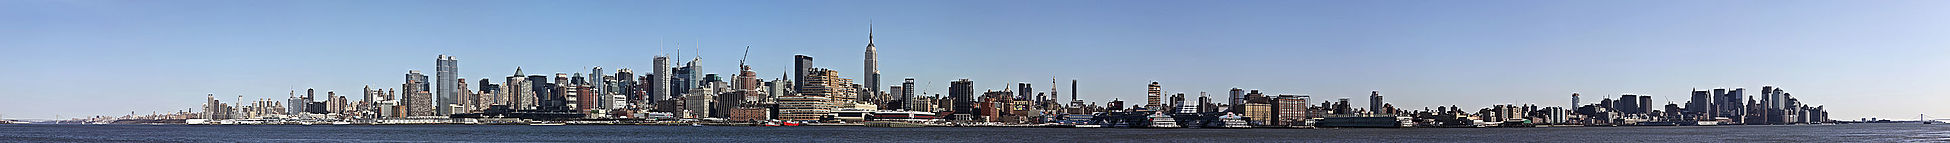 Toàn cảnh phía Tây Manhattan, quận lâu đời và đông dân nhất trong 5 quận của thành phố New York, tiểu bang New York, Hoa Kỳ. Tầm nhìn qua sông Hudson cách 20 dặm (32 km) tại thành phố Hoboken, quận Hudson, tiểu bang New Jersey.